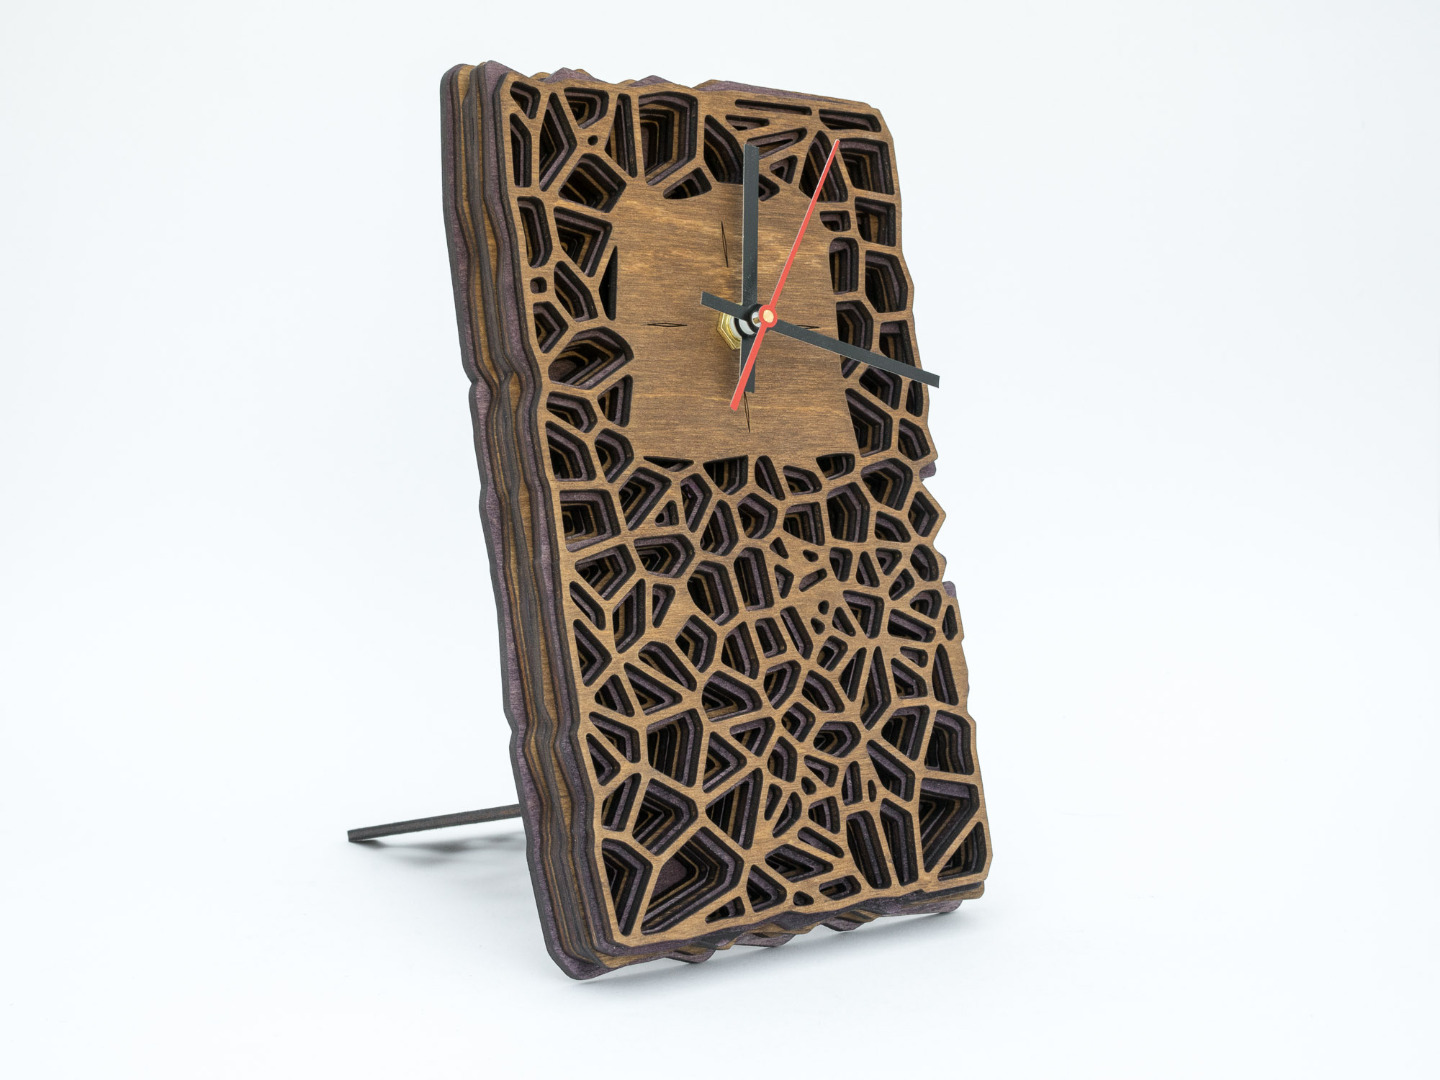 Wanduhr oder Tischuhr aus Holz mit lautlosem Uhrwerk - Organisches Zweifarbiges Design in Walnuss